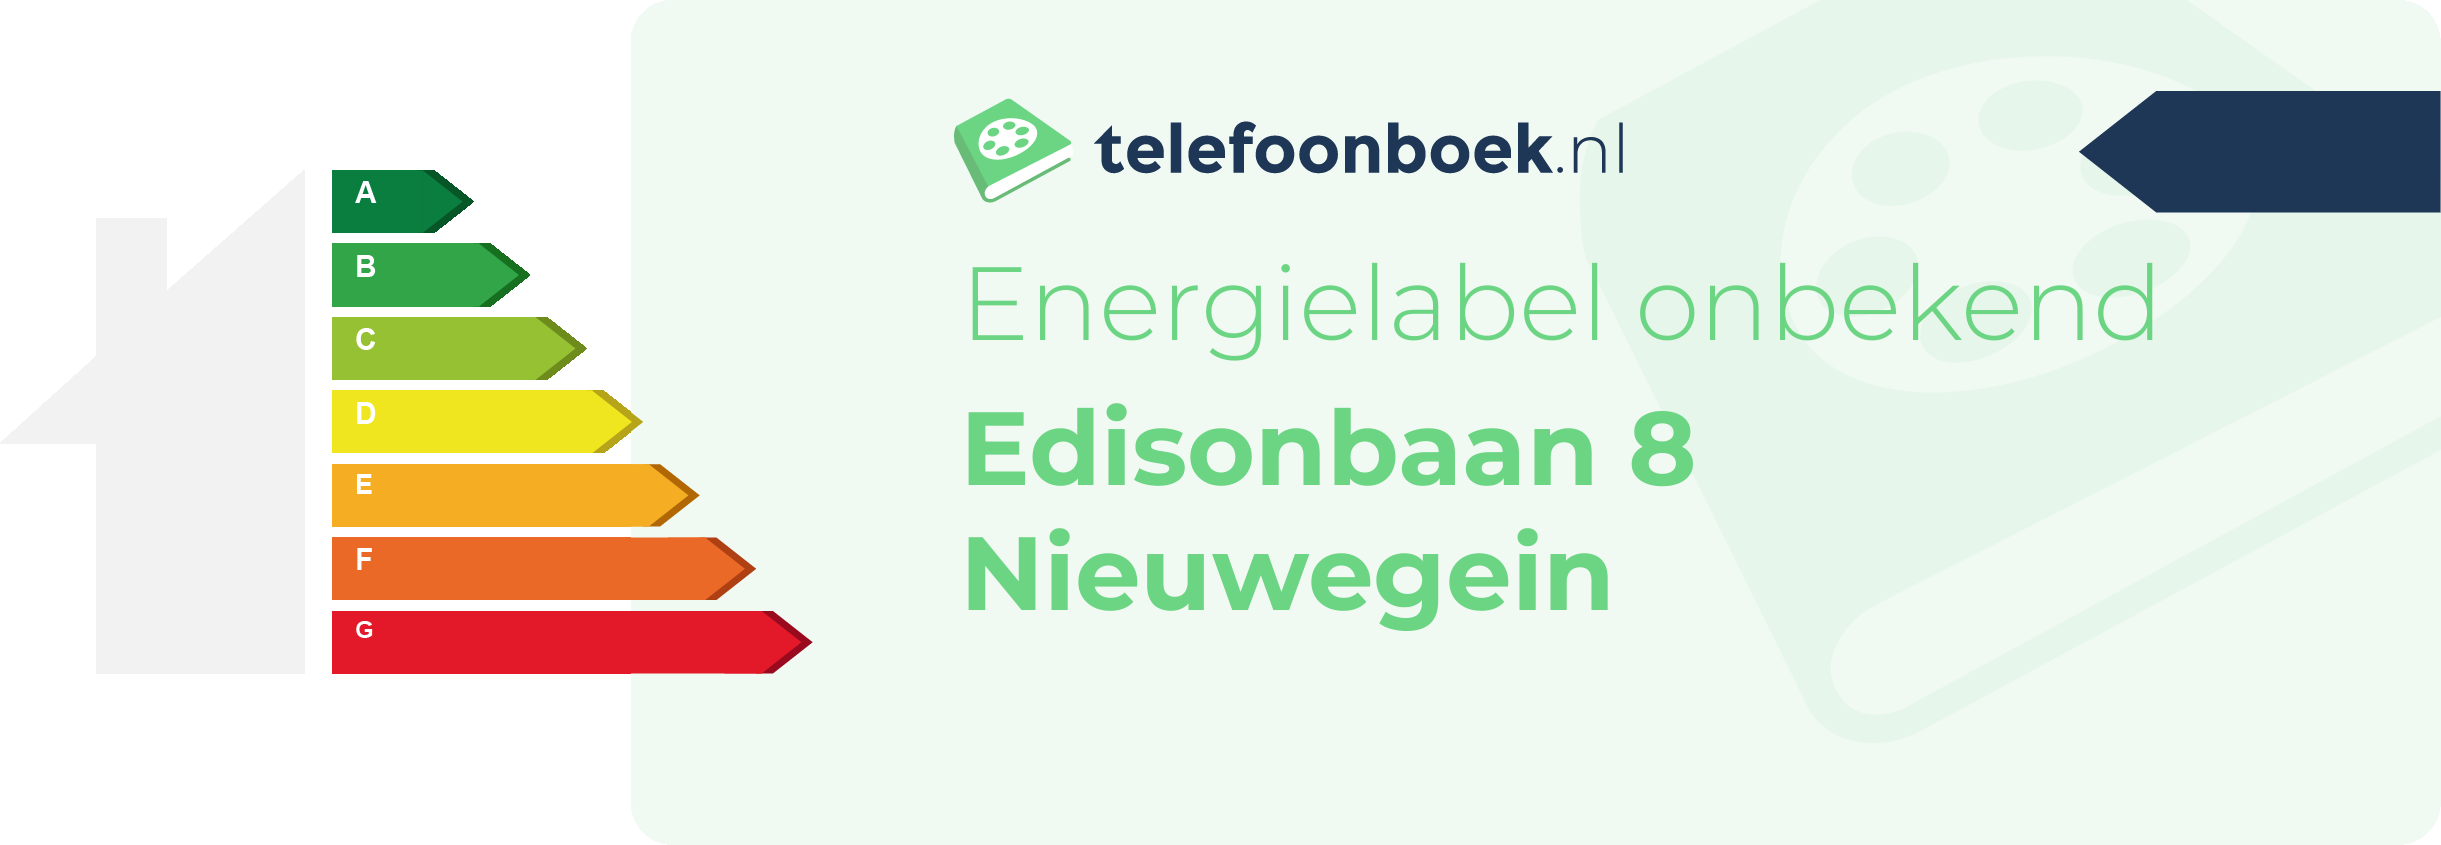 Energielabel Edisonbaan 8 Nieuwegein